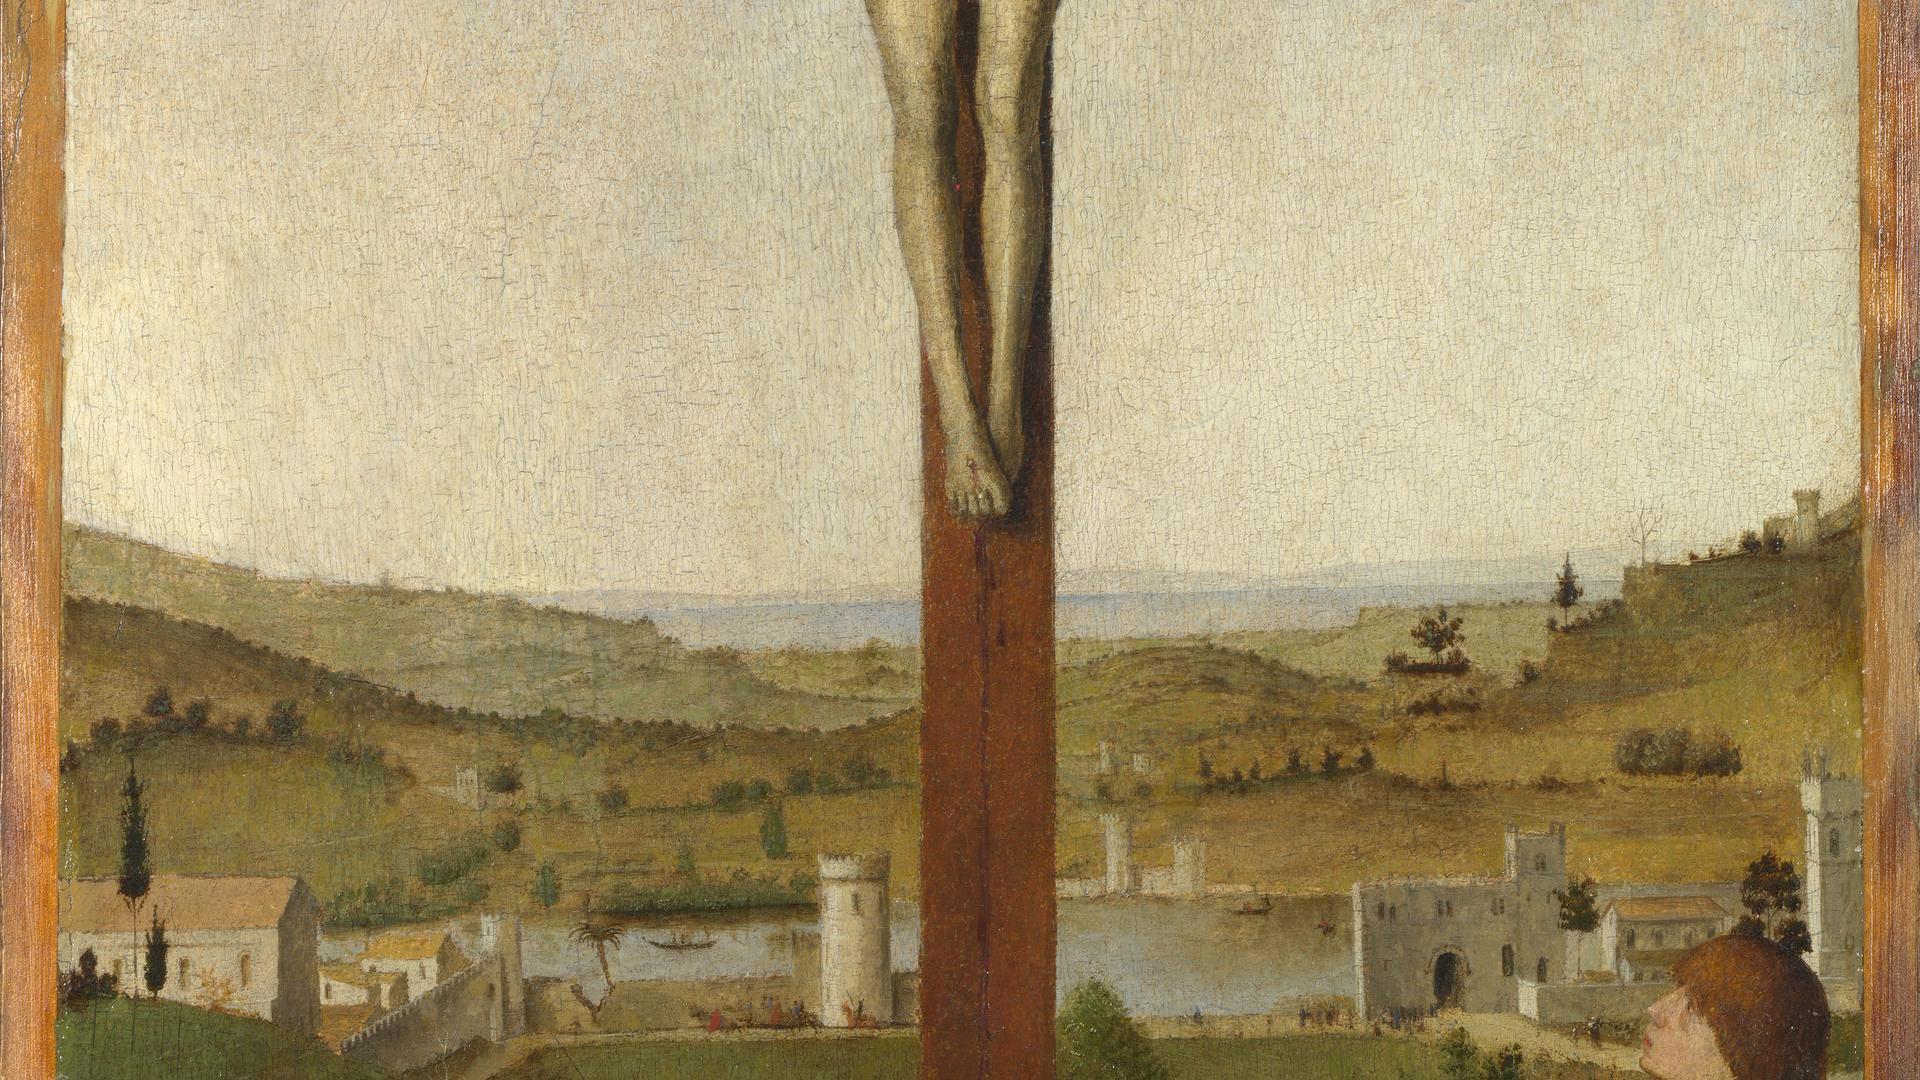 Christ Crucified by Antonello da Messina